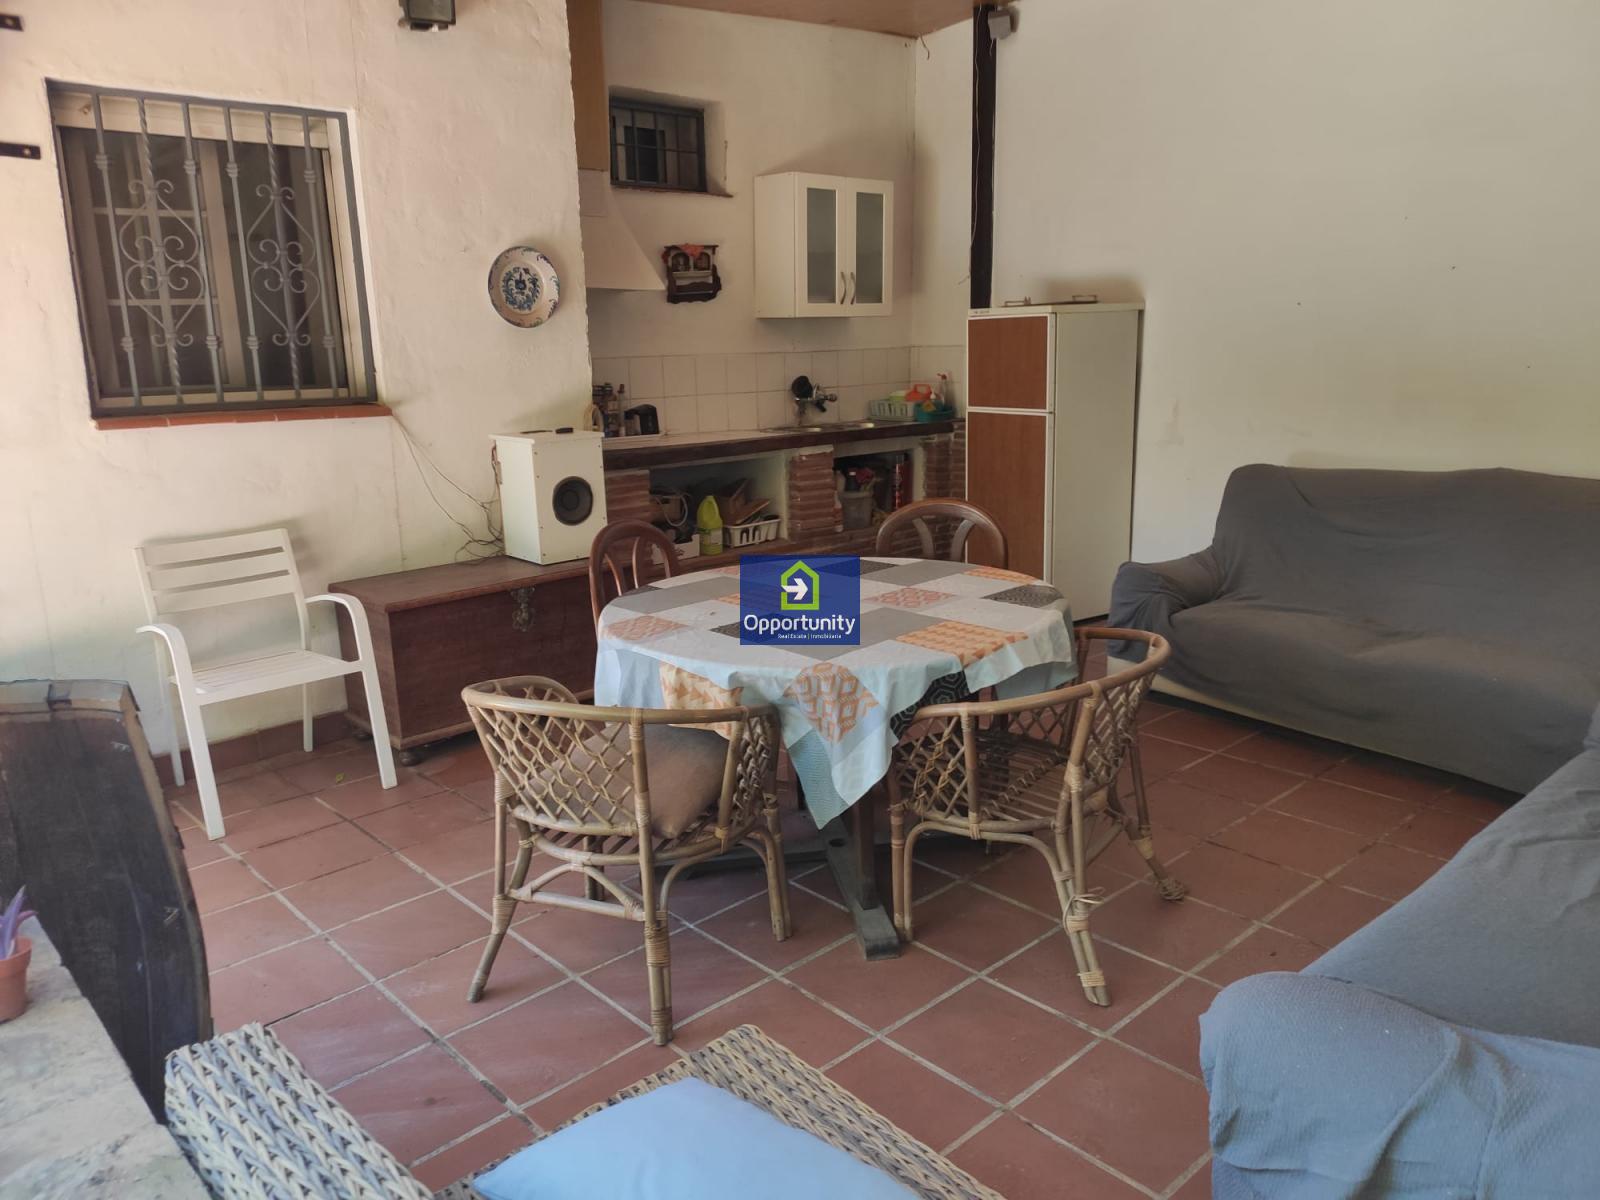 Villa udlejes på lang tid I Cerrillo de Maracena (Granada), 750€/måned (årstid)